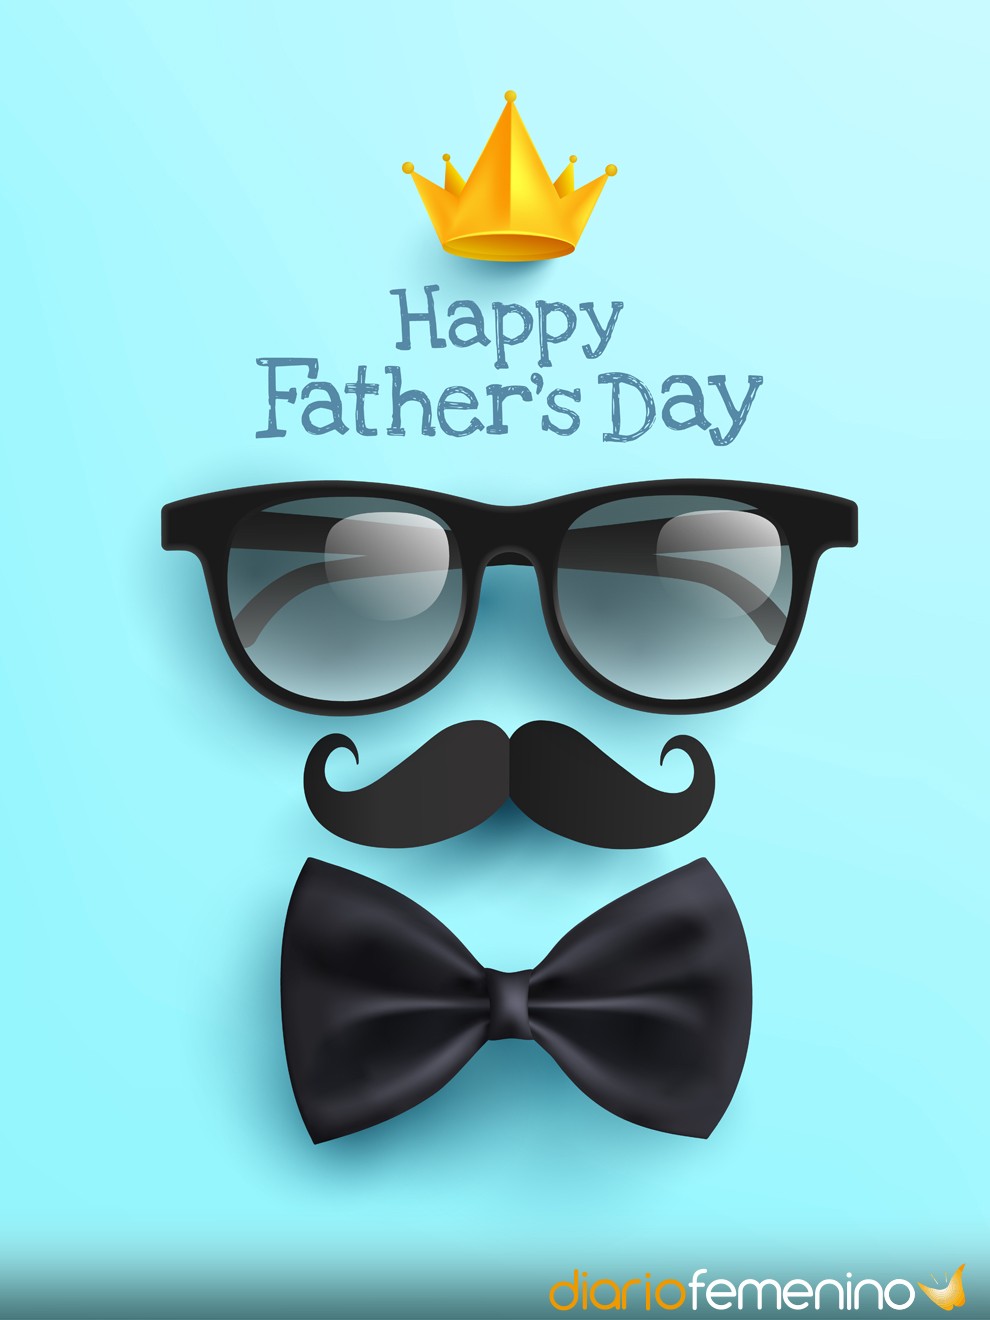 29 bellas frases para el Día del Padre en inglés: Happy Father's Day!